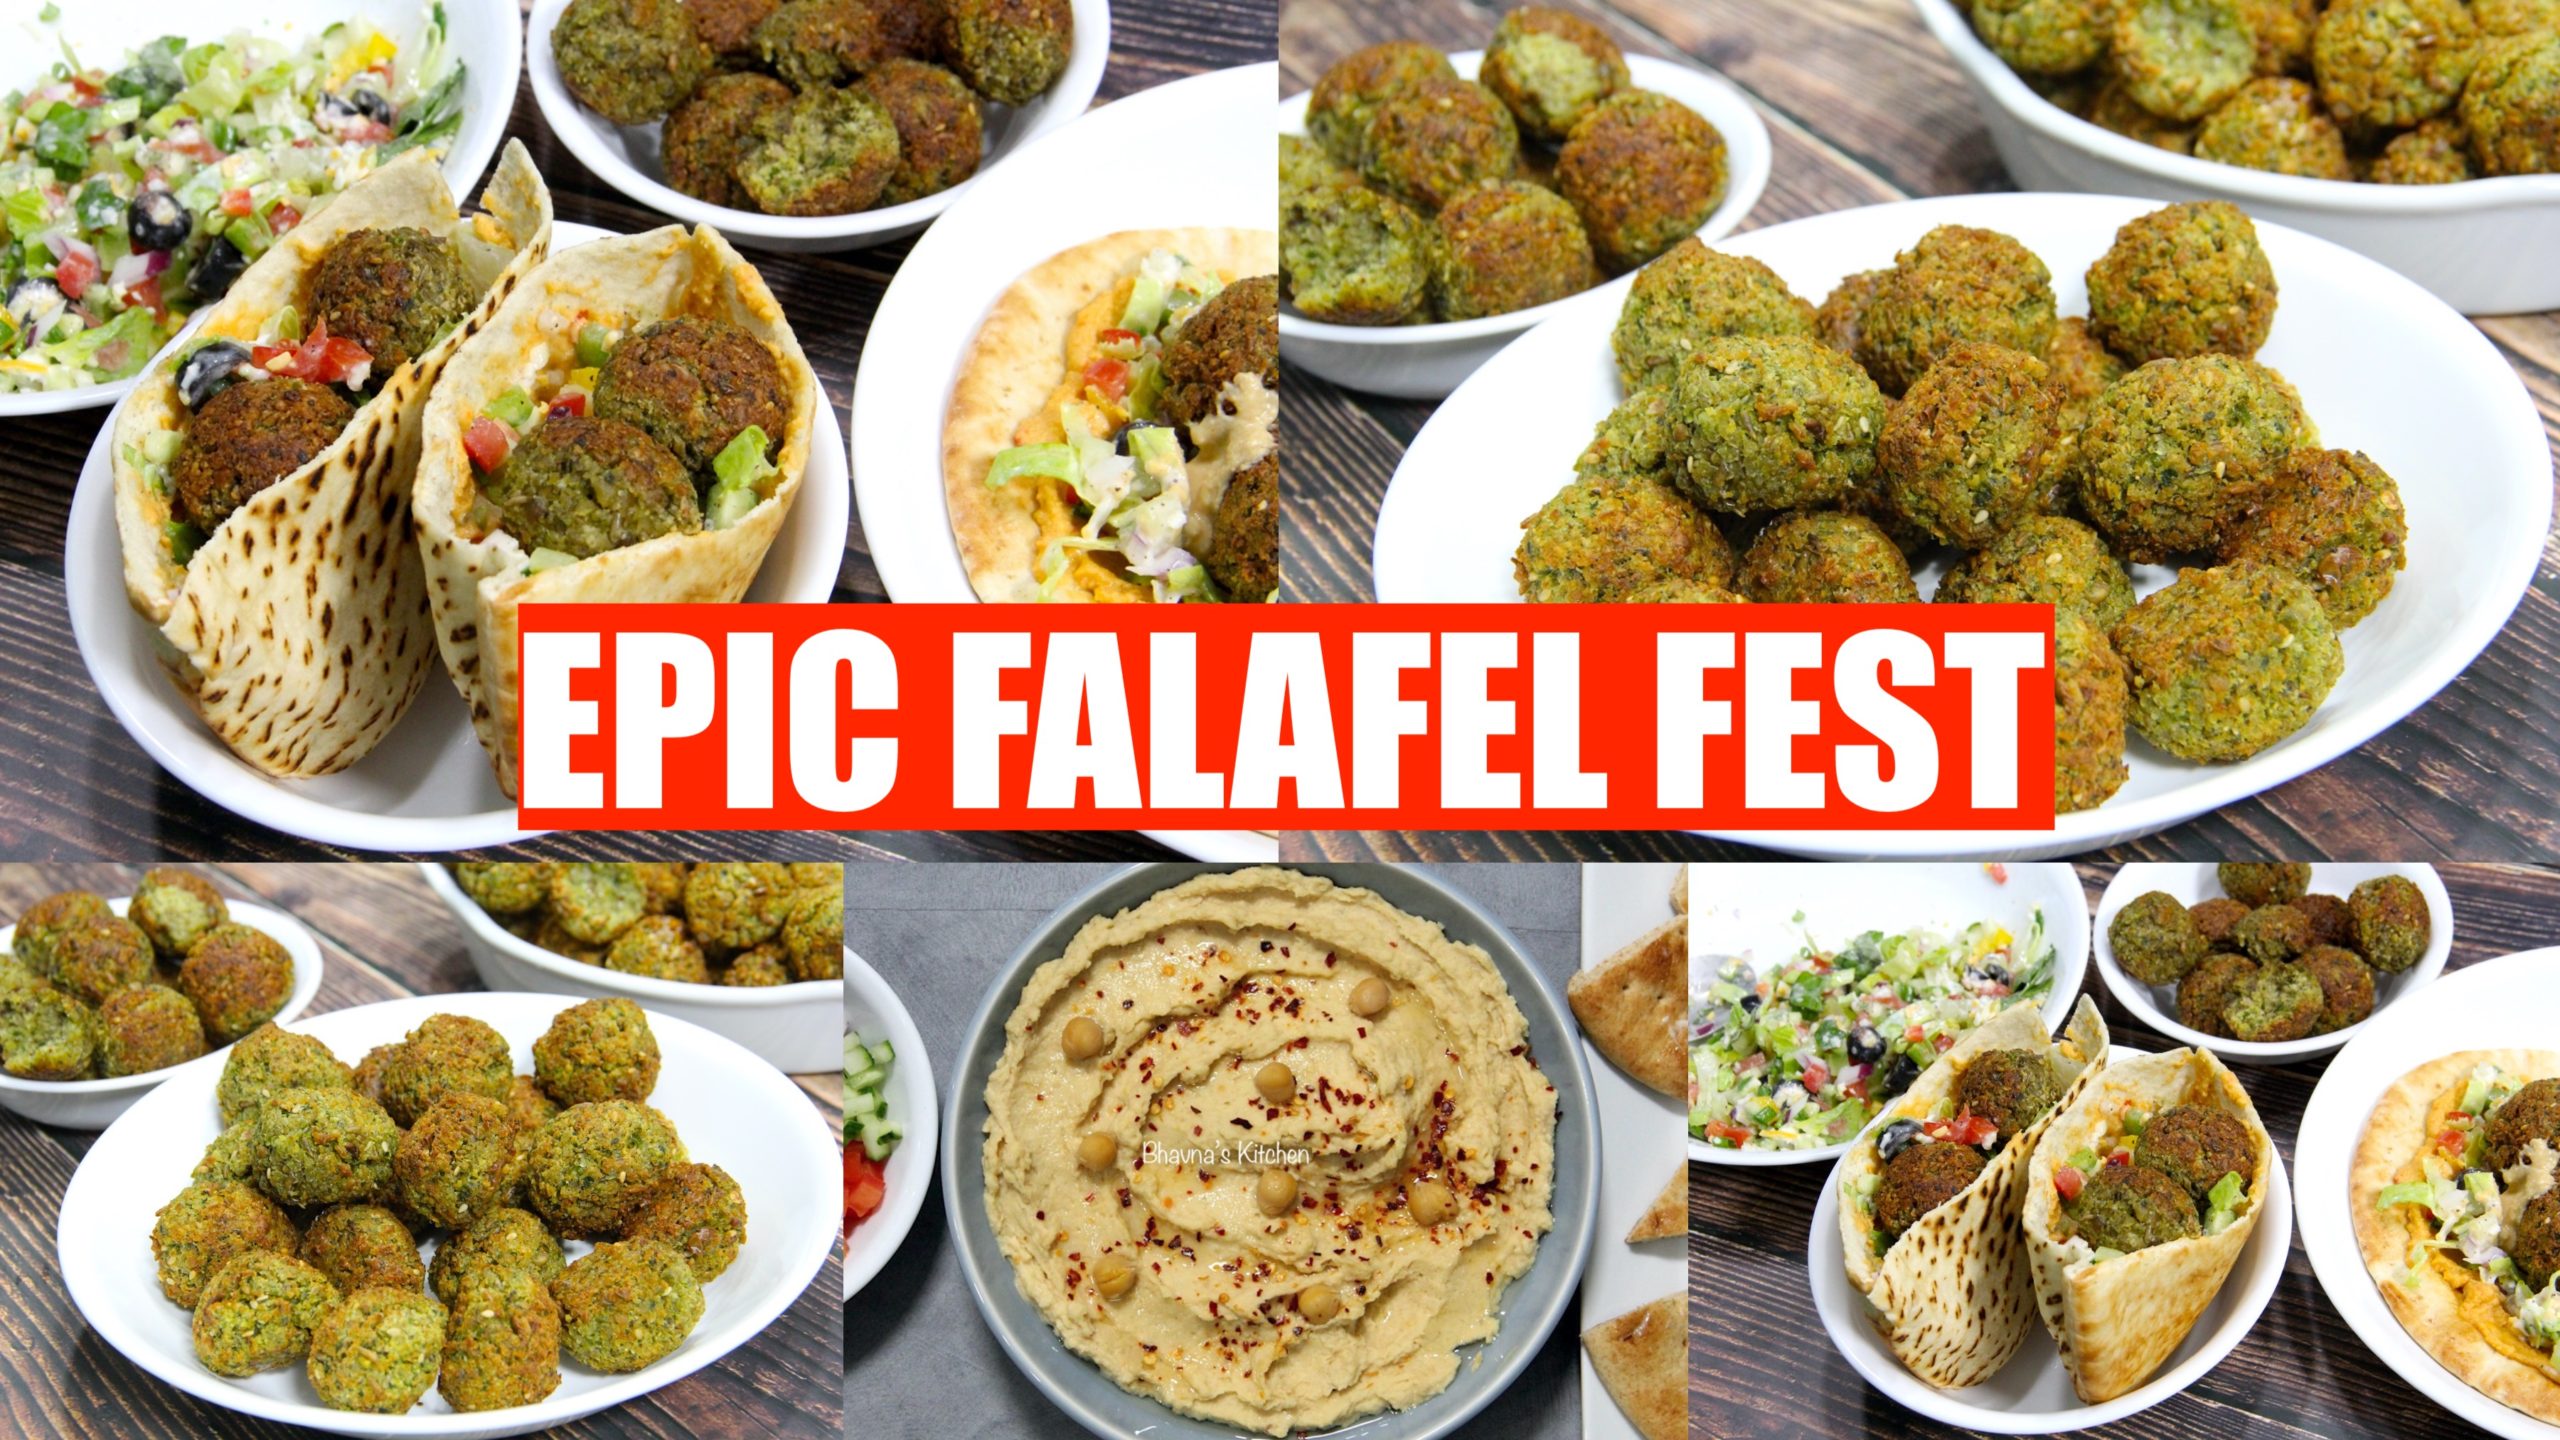 Epic Falafel Fest at Home! Baked Falafel, Hummus & Pita Bread Making Video Recipe | Bhavna’s Kitchen